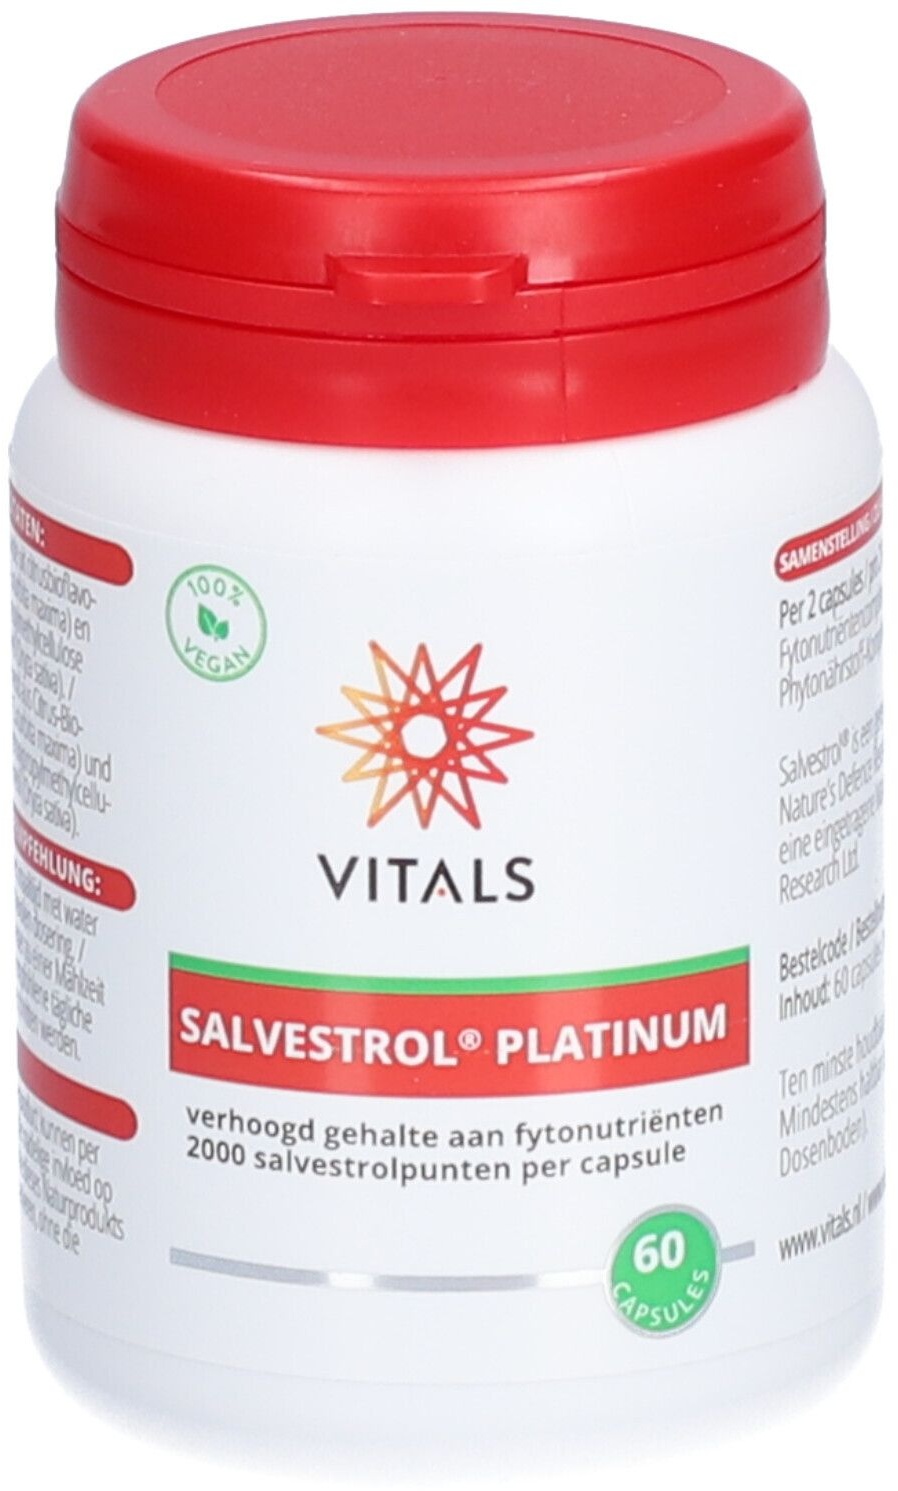 Vitals Salvestrol Platinum 60 pc(s) capsule(s)